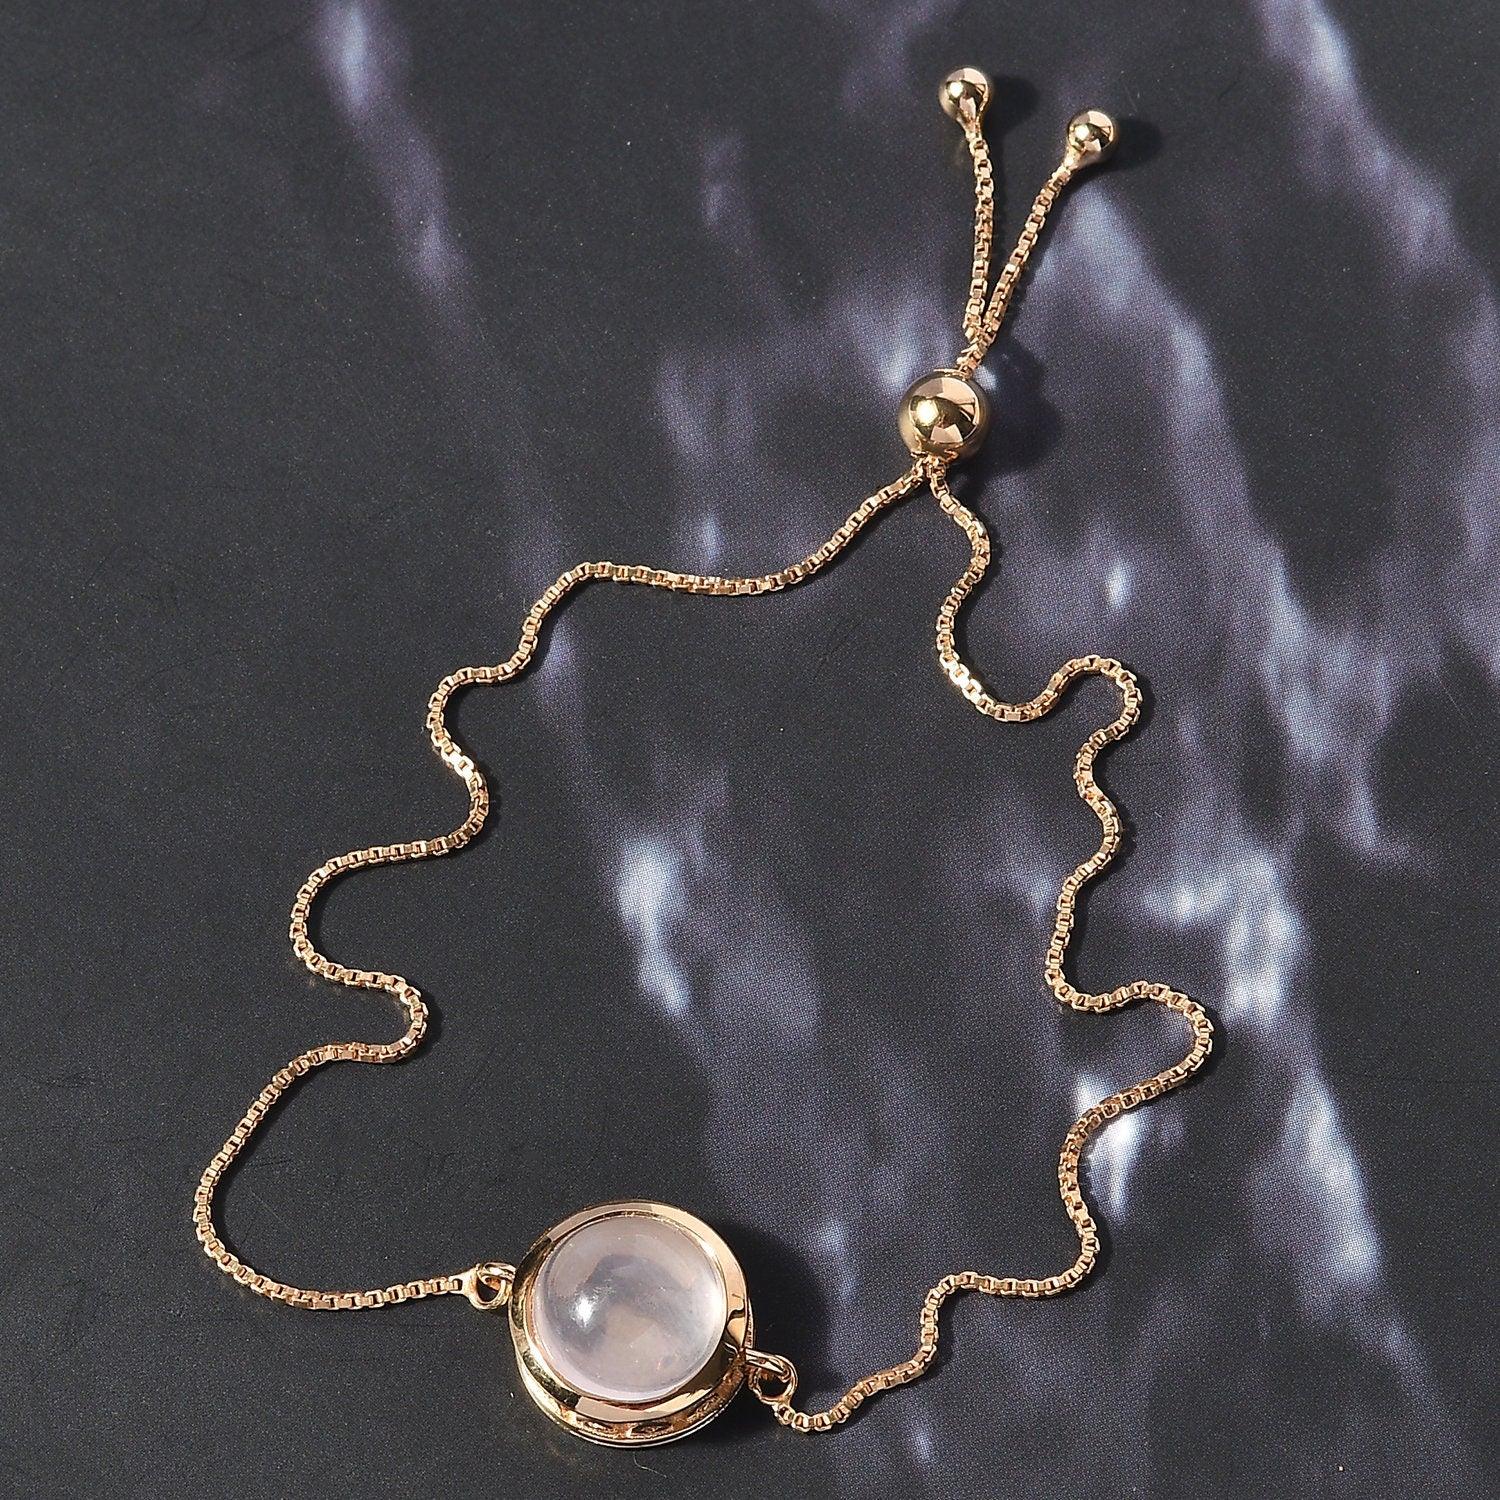 Rose Quartz Bracelet | Heart Chakra Bracelet | 925 Sterling Silver Bracelet | Bracelet for Women | Gift for her - Inspiring Jewellery